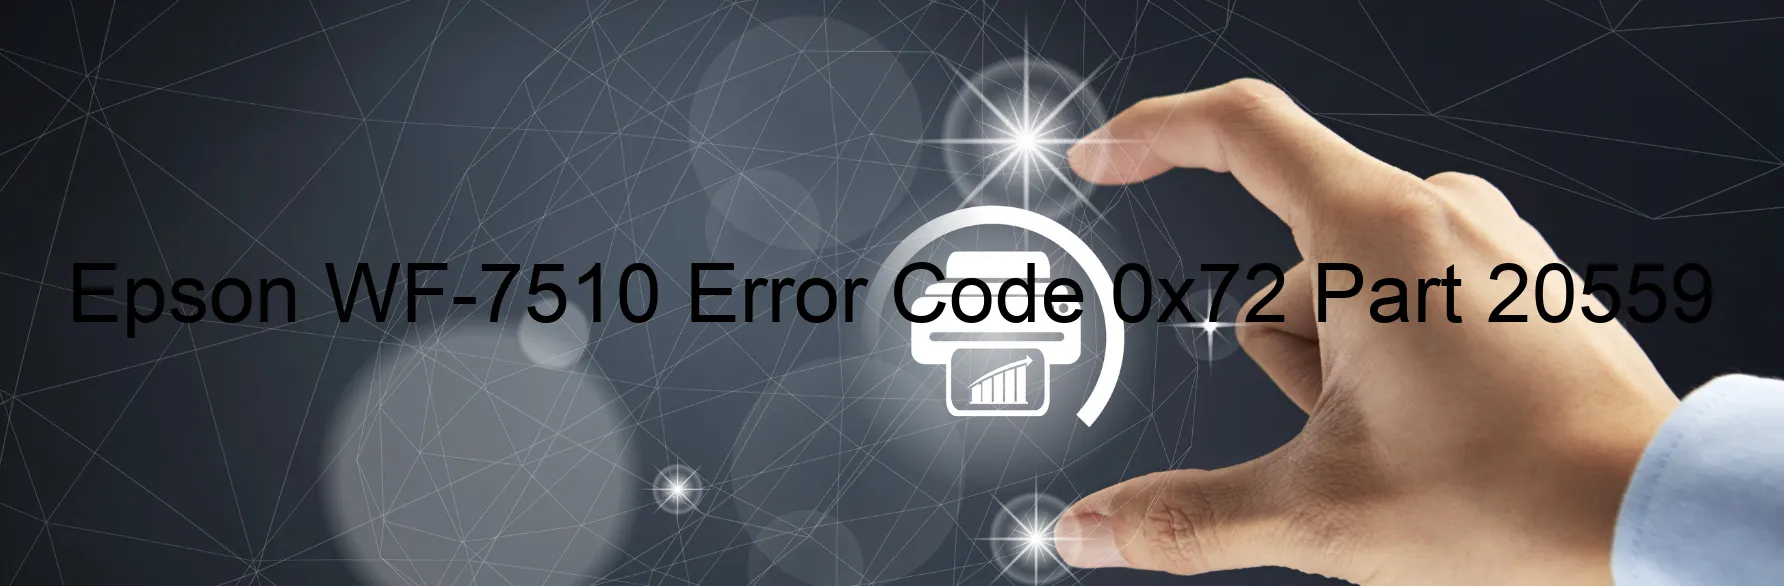 Epson WF-7510 Error Code 0x72 Part 20559